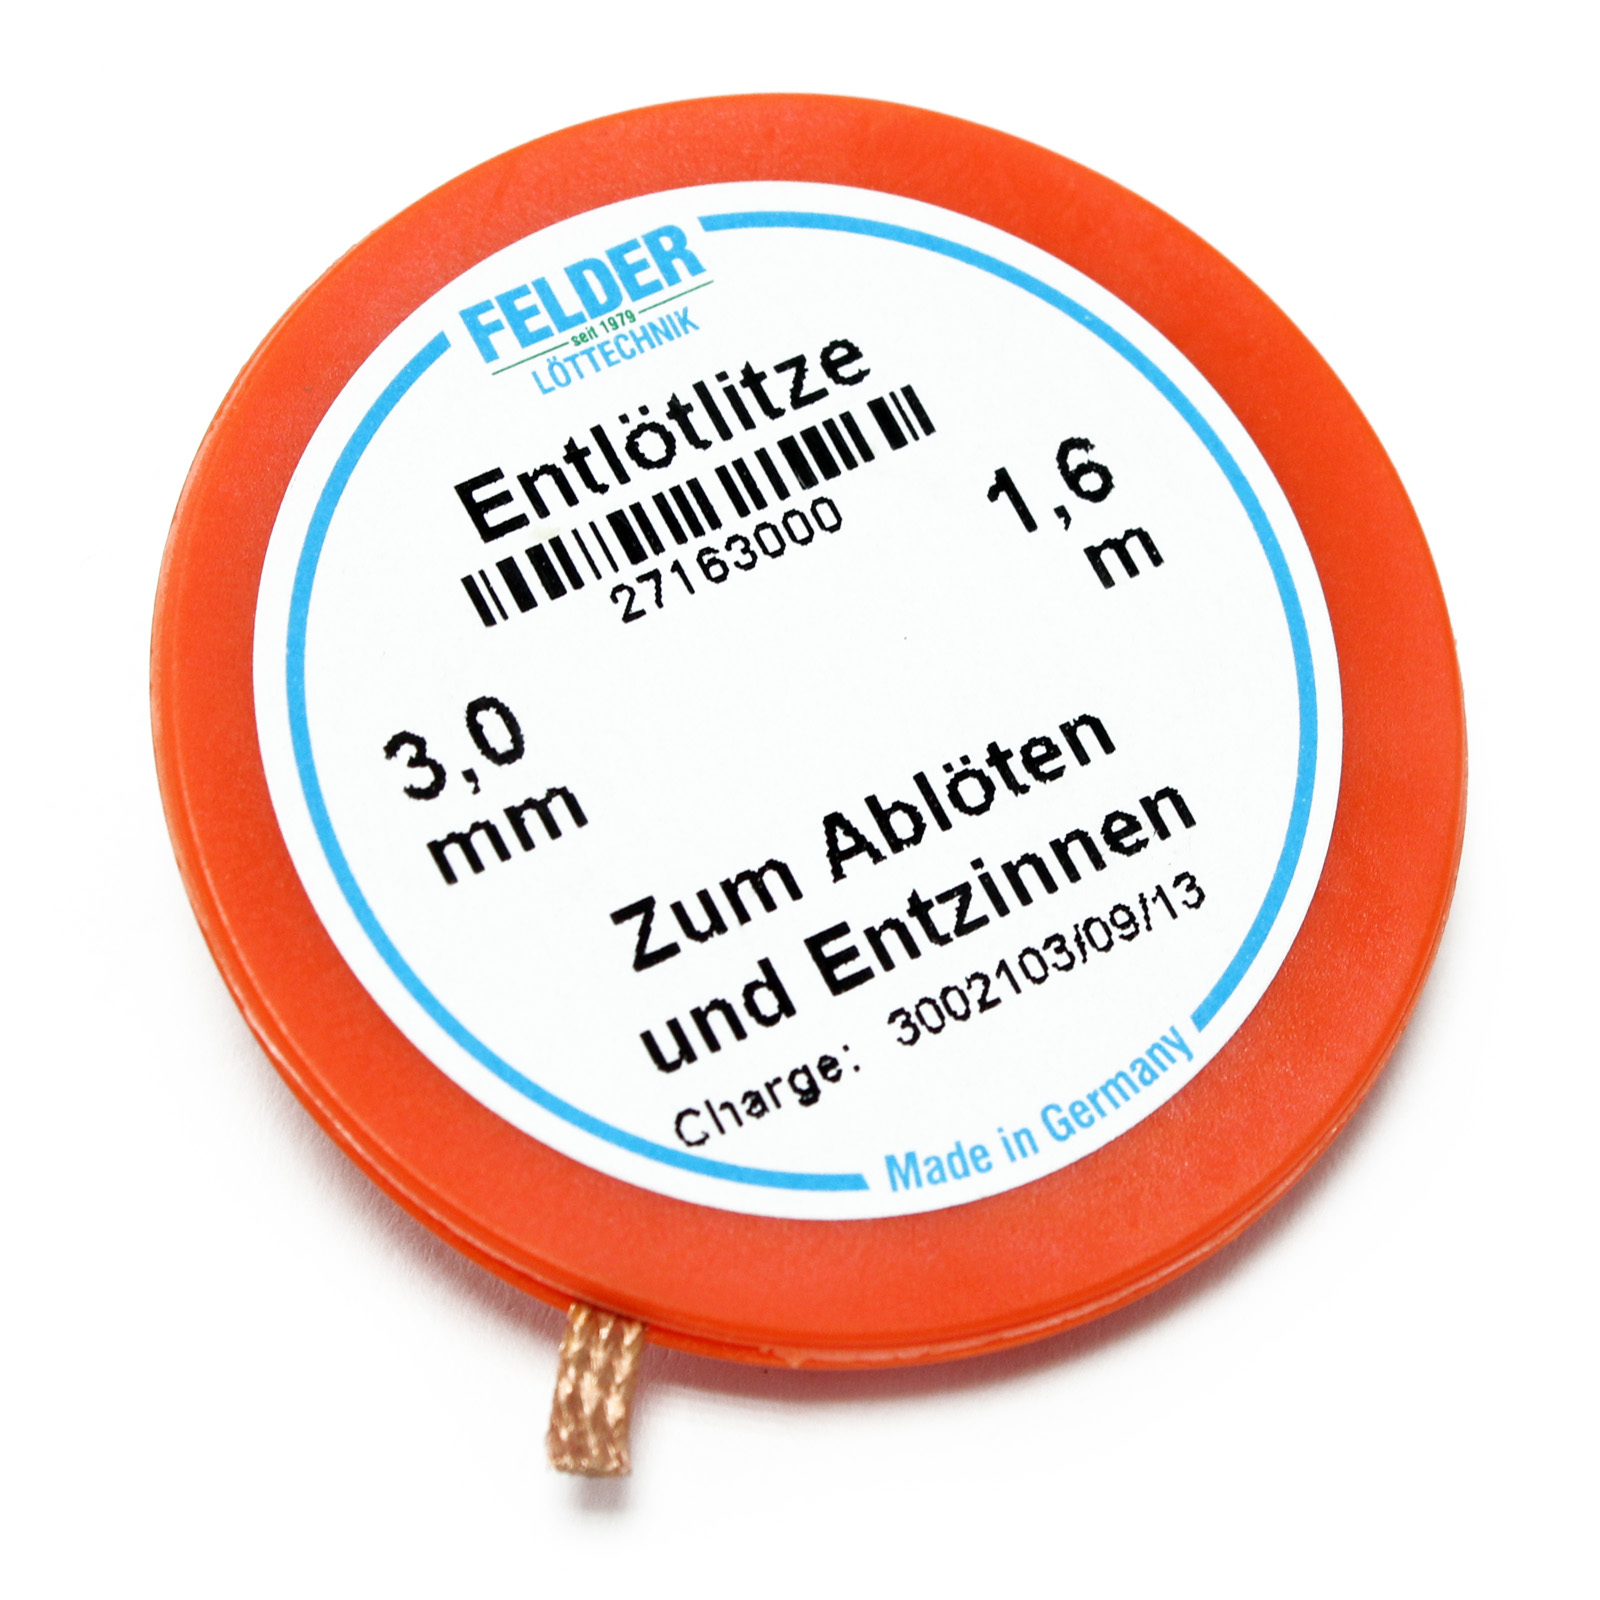 Felder flux-soaked Solder Wick, orange, 1.6m, 3,0mm